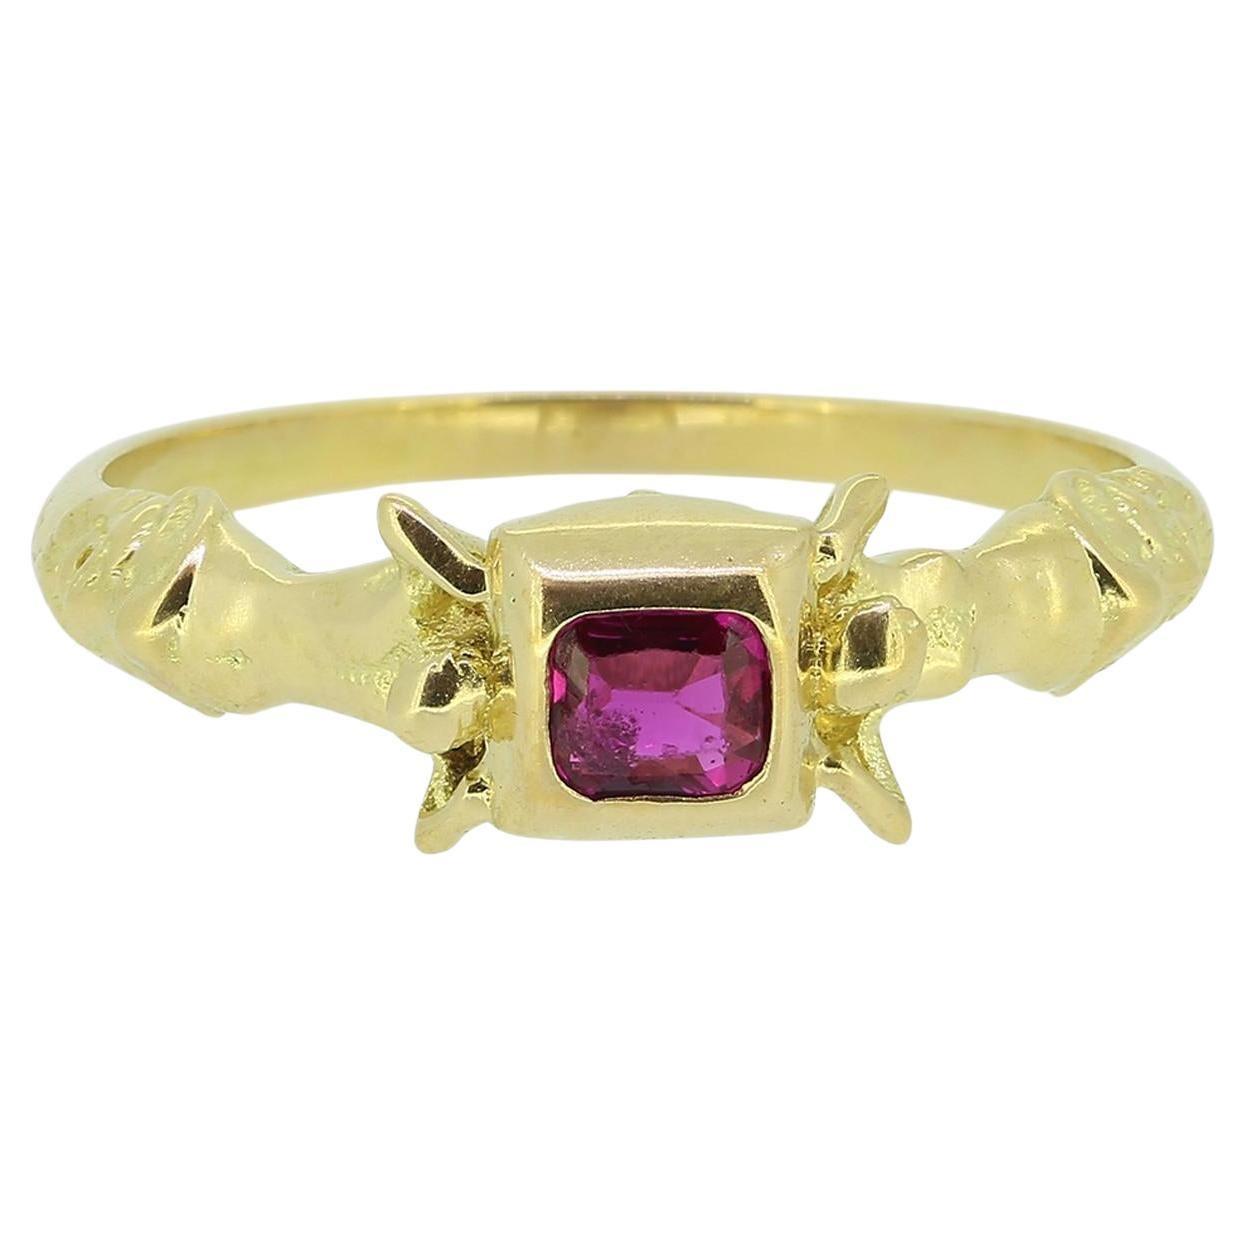 Renaissance Revival Burmese Ruby Ring For Sale